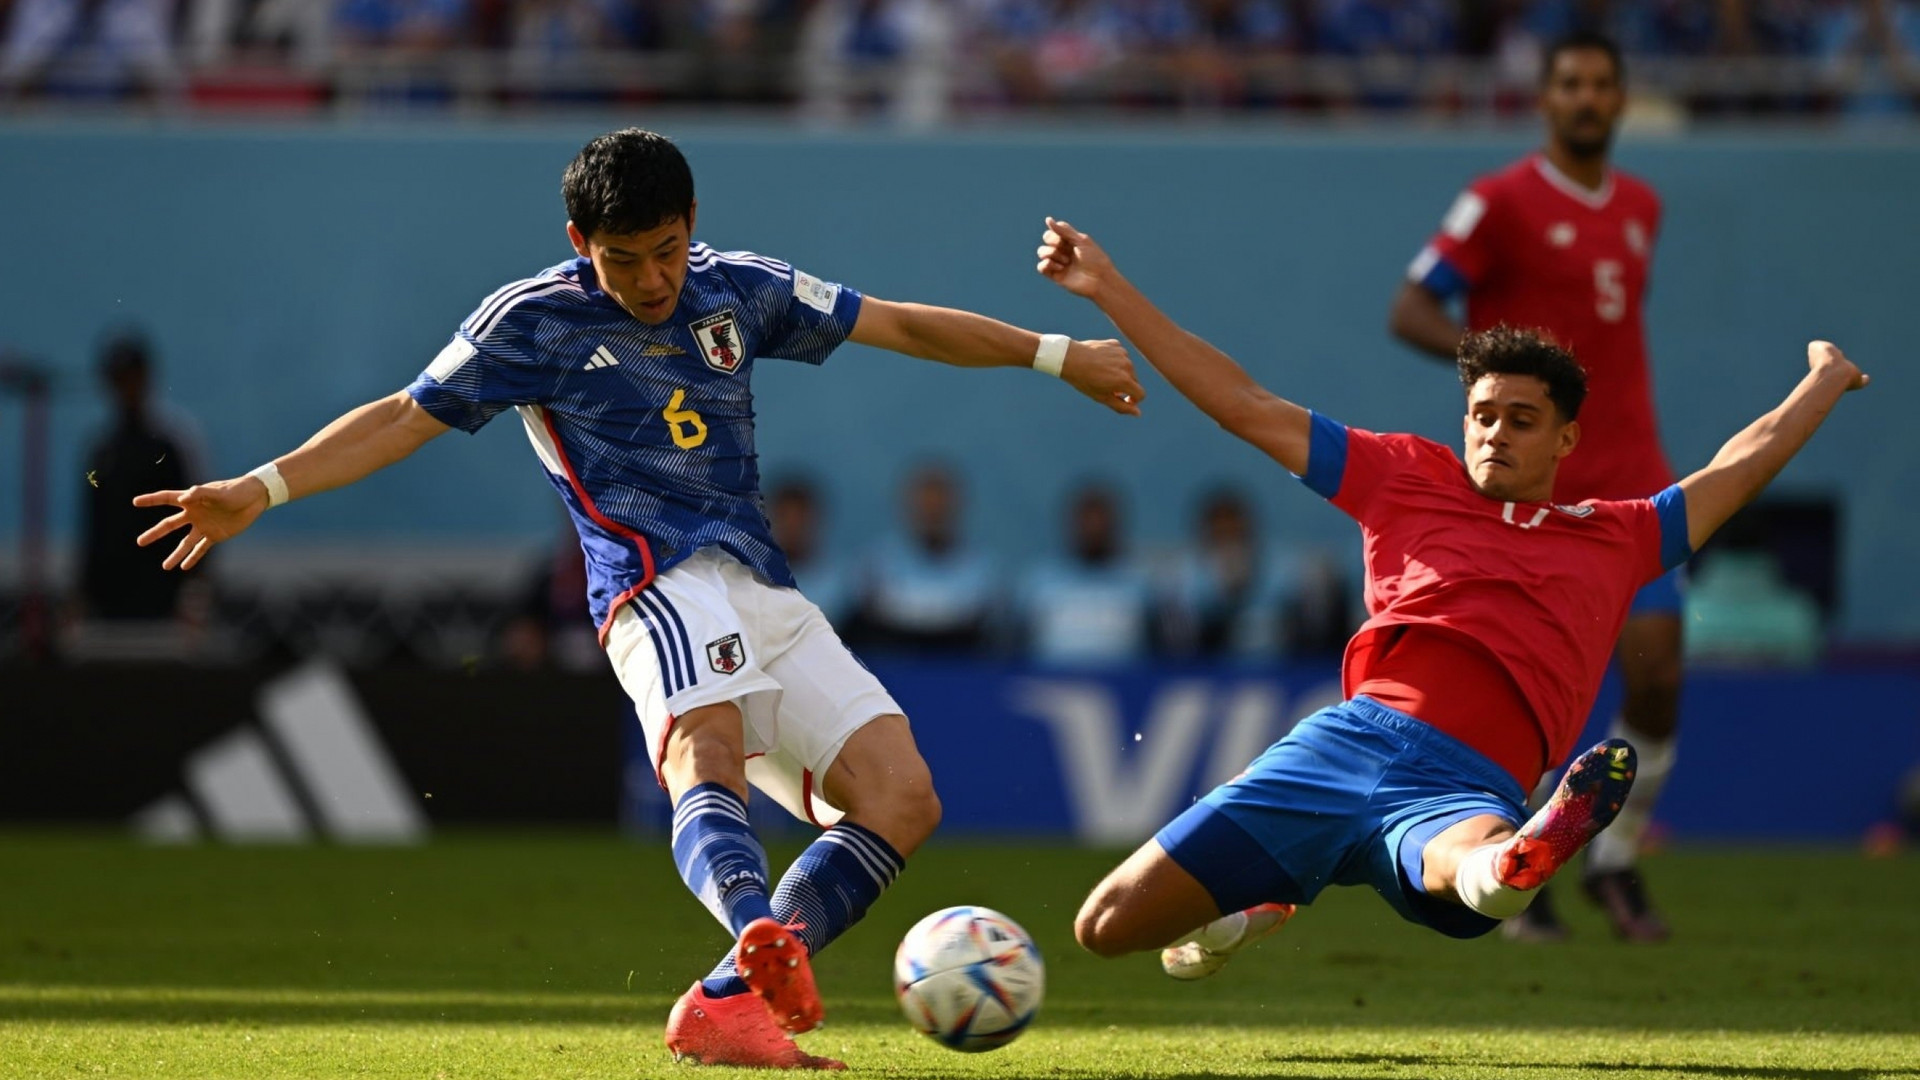 Nhật Bản thua đau Costa Rica, bảng 'tử thần' thêm hấp dẫn - 1